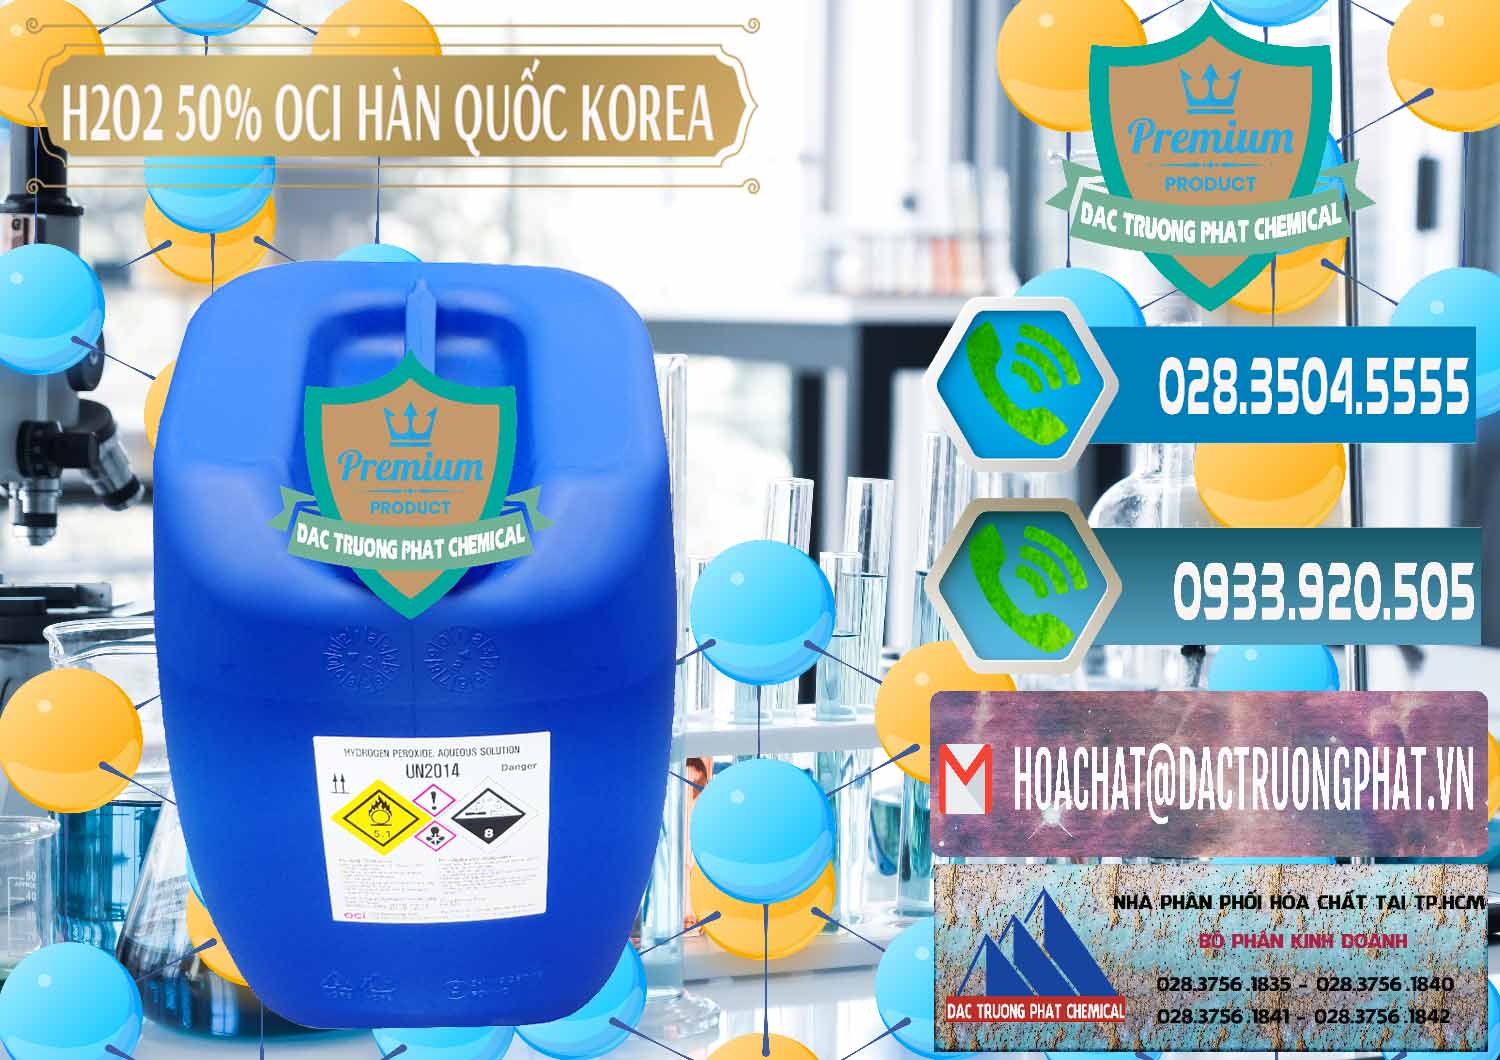 Nơi chuyên bán - cung ứng H2O2 - Hydrogen Peroxide 50% OCI Hàn Quốc Korea - 0075 - Công ty bán - cung cấp hóa chất tại TP.HCM - congtyhoachat.net